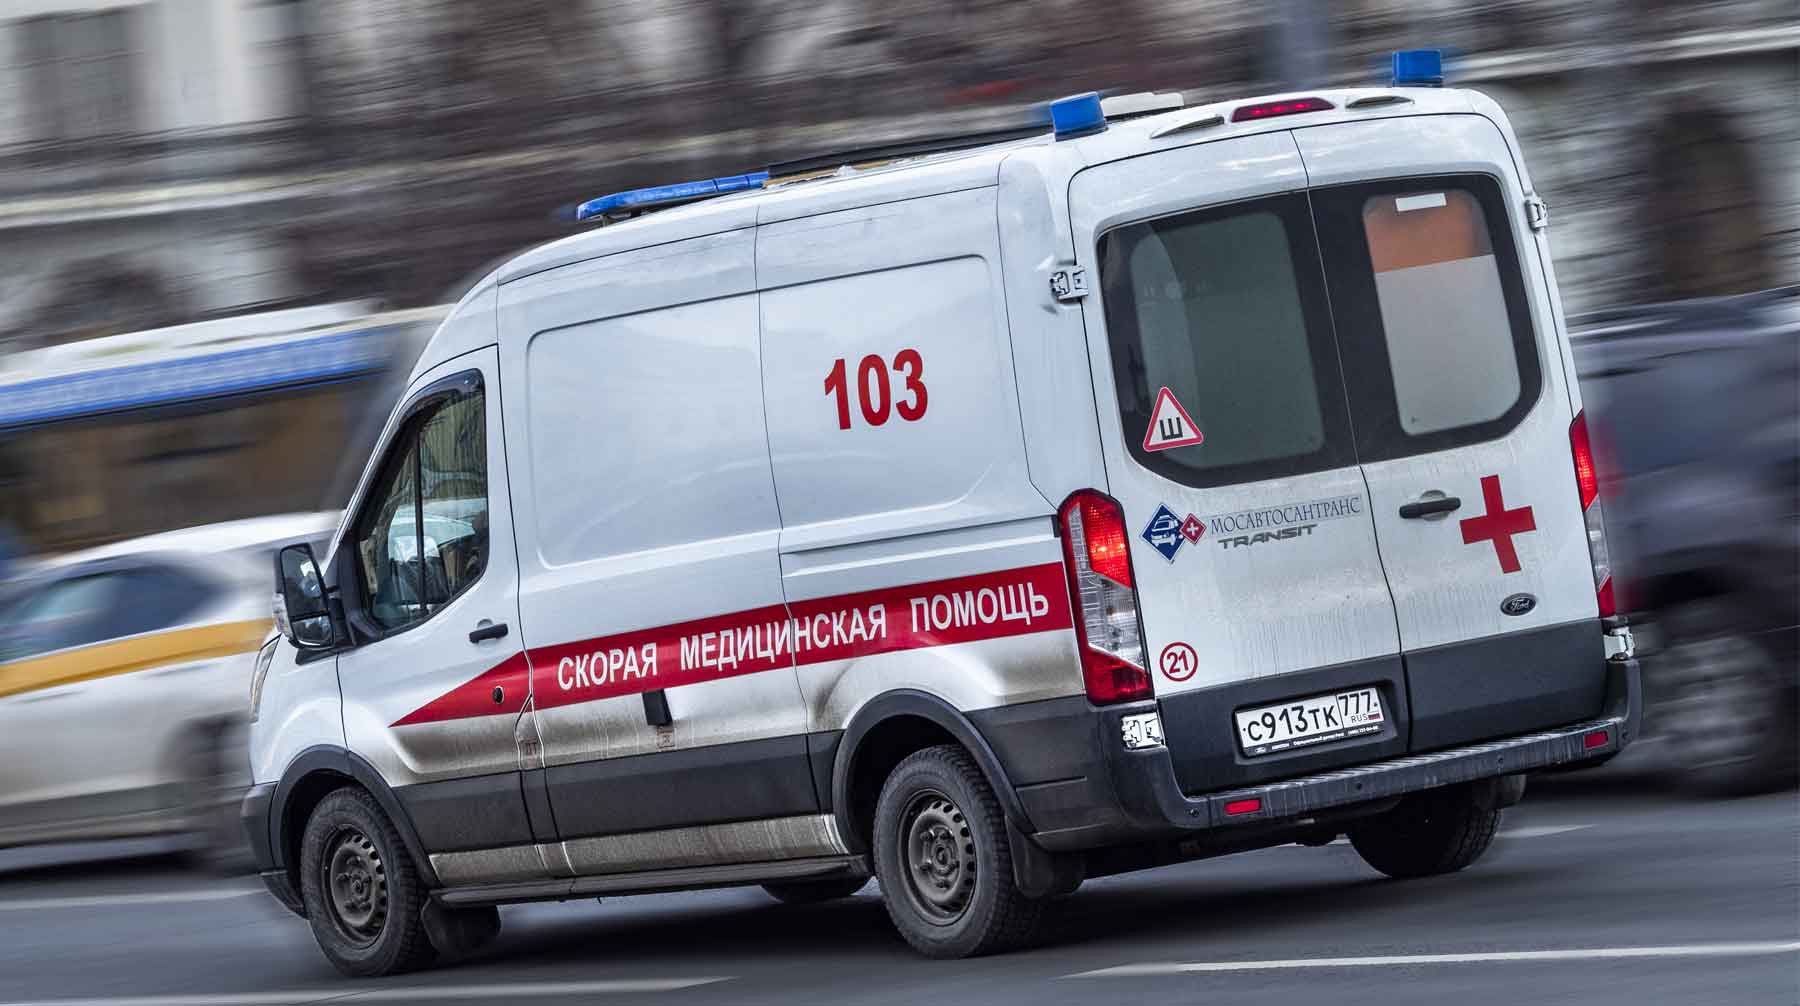 Dailystorm - Три человека погибли при взрыве на химзаводе в Пермском крае